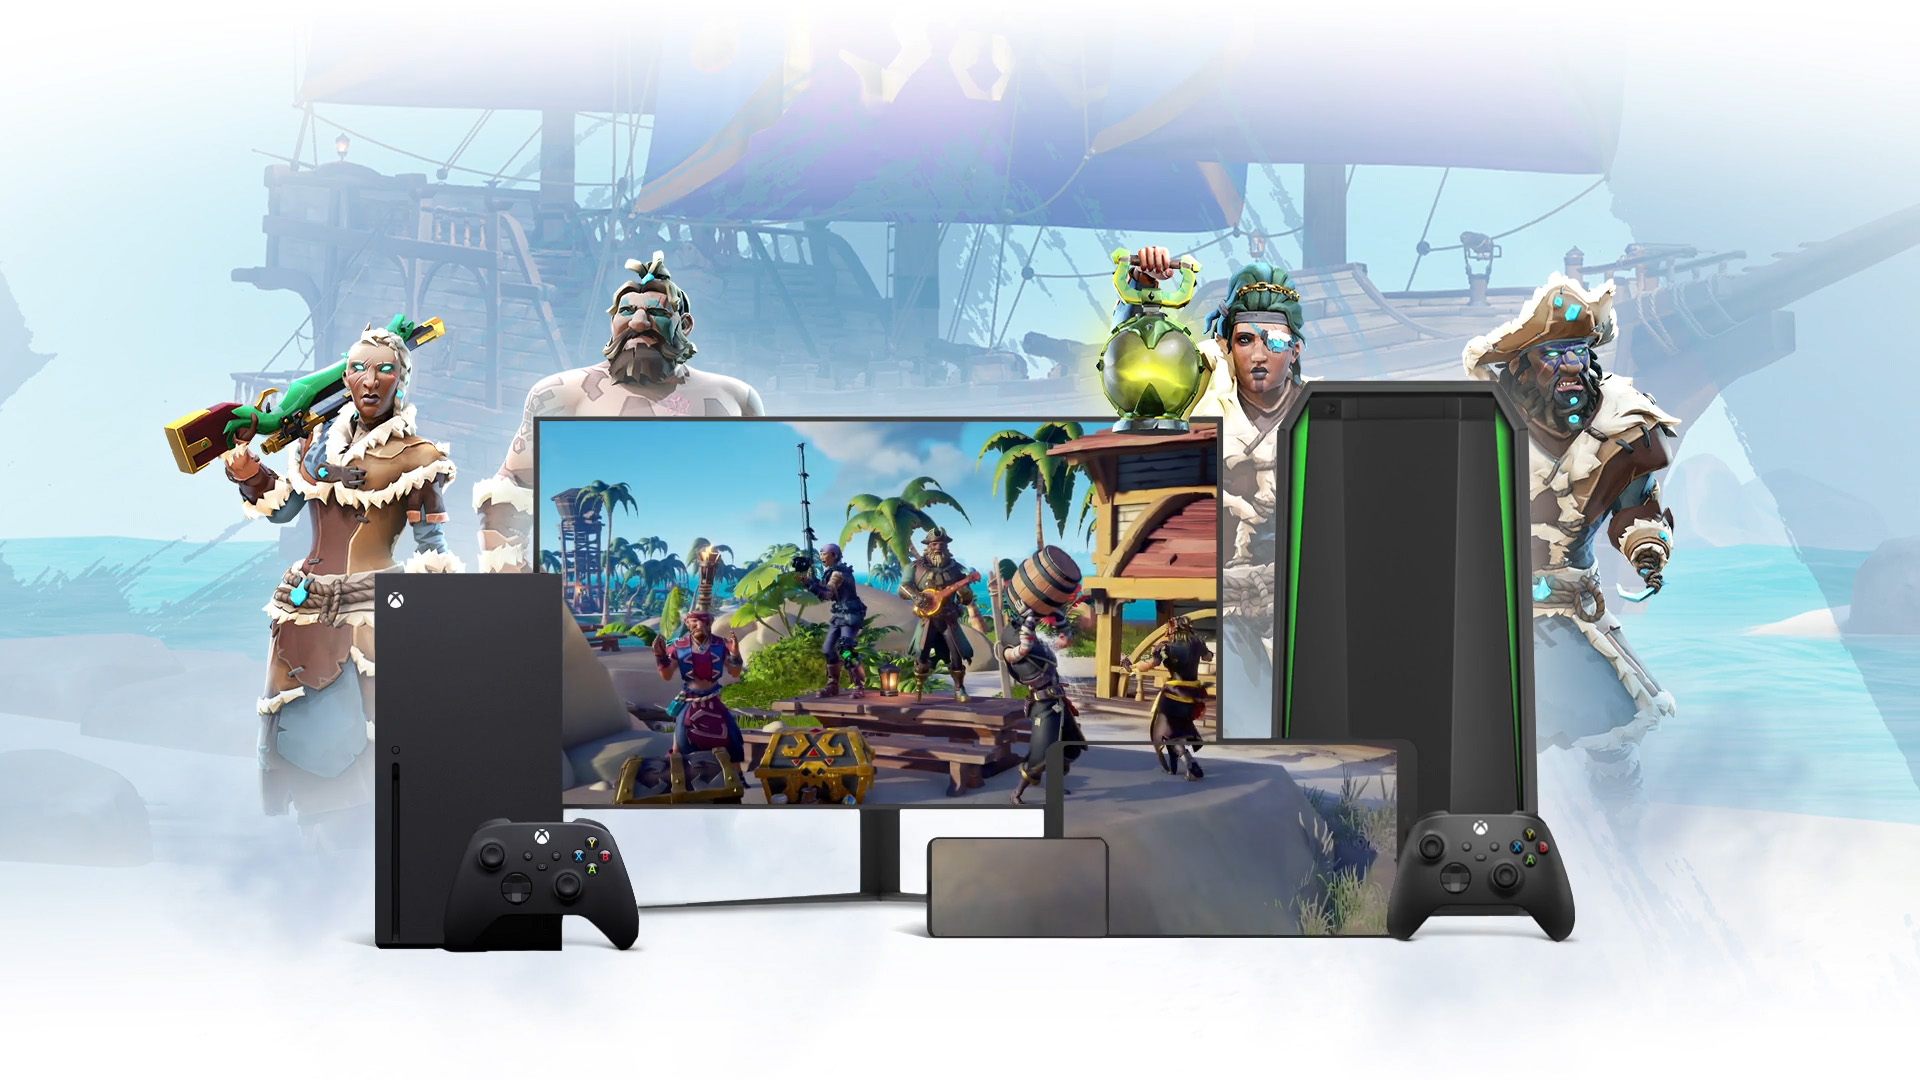 Baggrund af et piratskib med Sea of Thieves-karakterer omkring en laptop, tv og en mobilenhed.